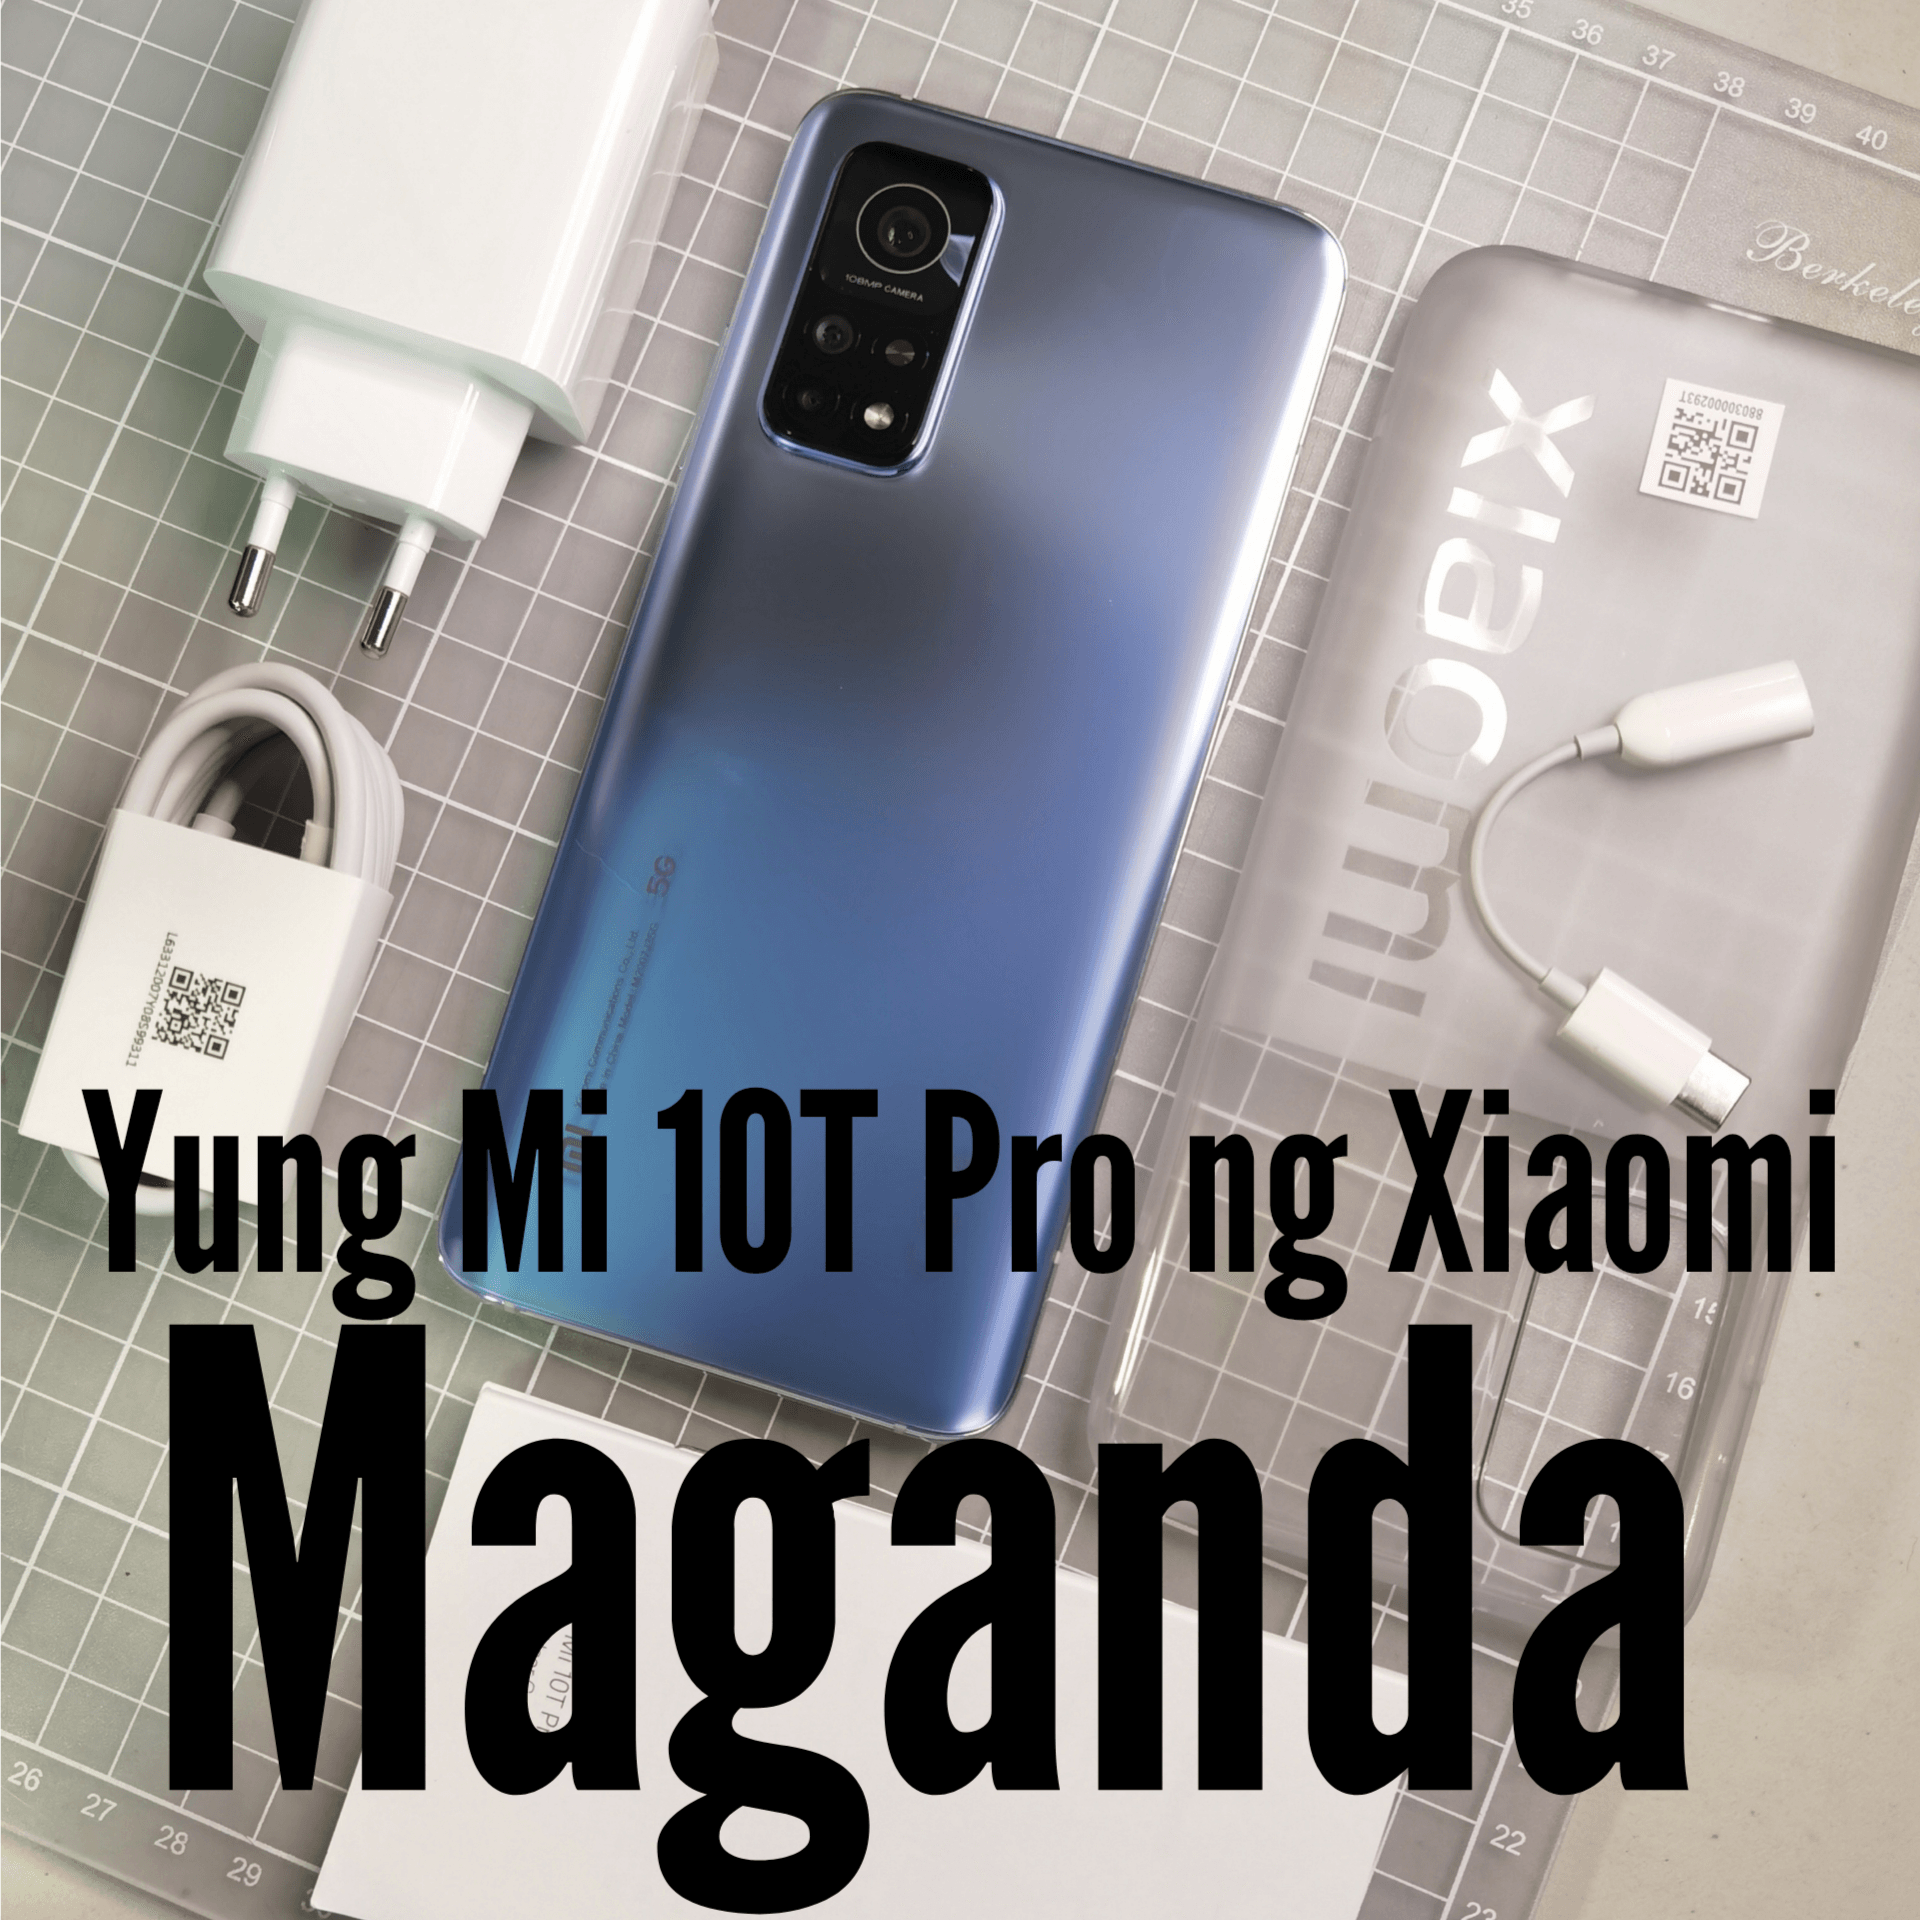 Kung nagbabalak kang bumili nitong Mi 10T Pro, yes ituloy mo na dahil sulit.